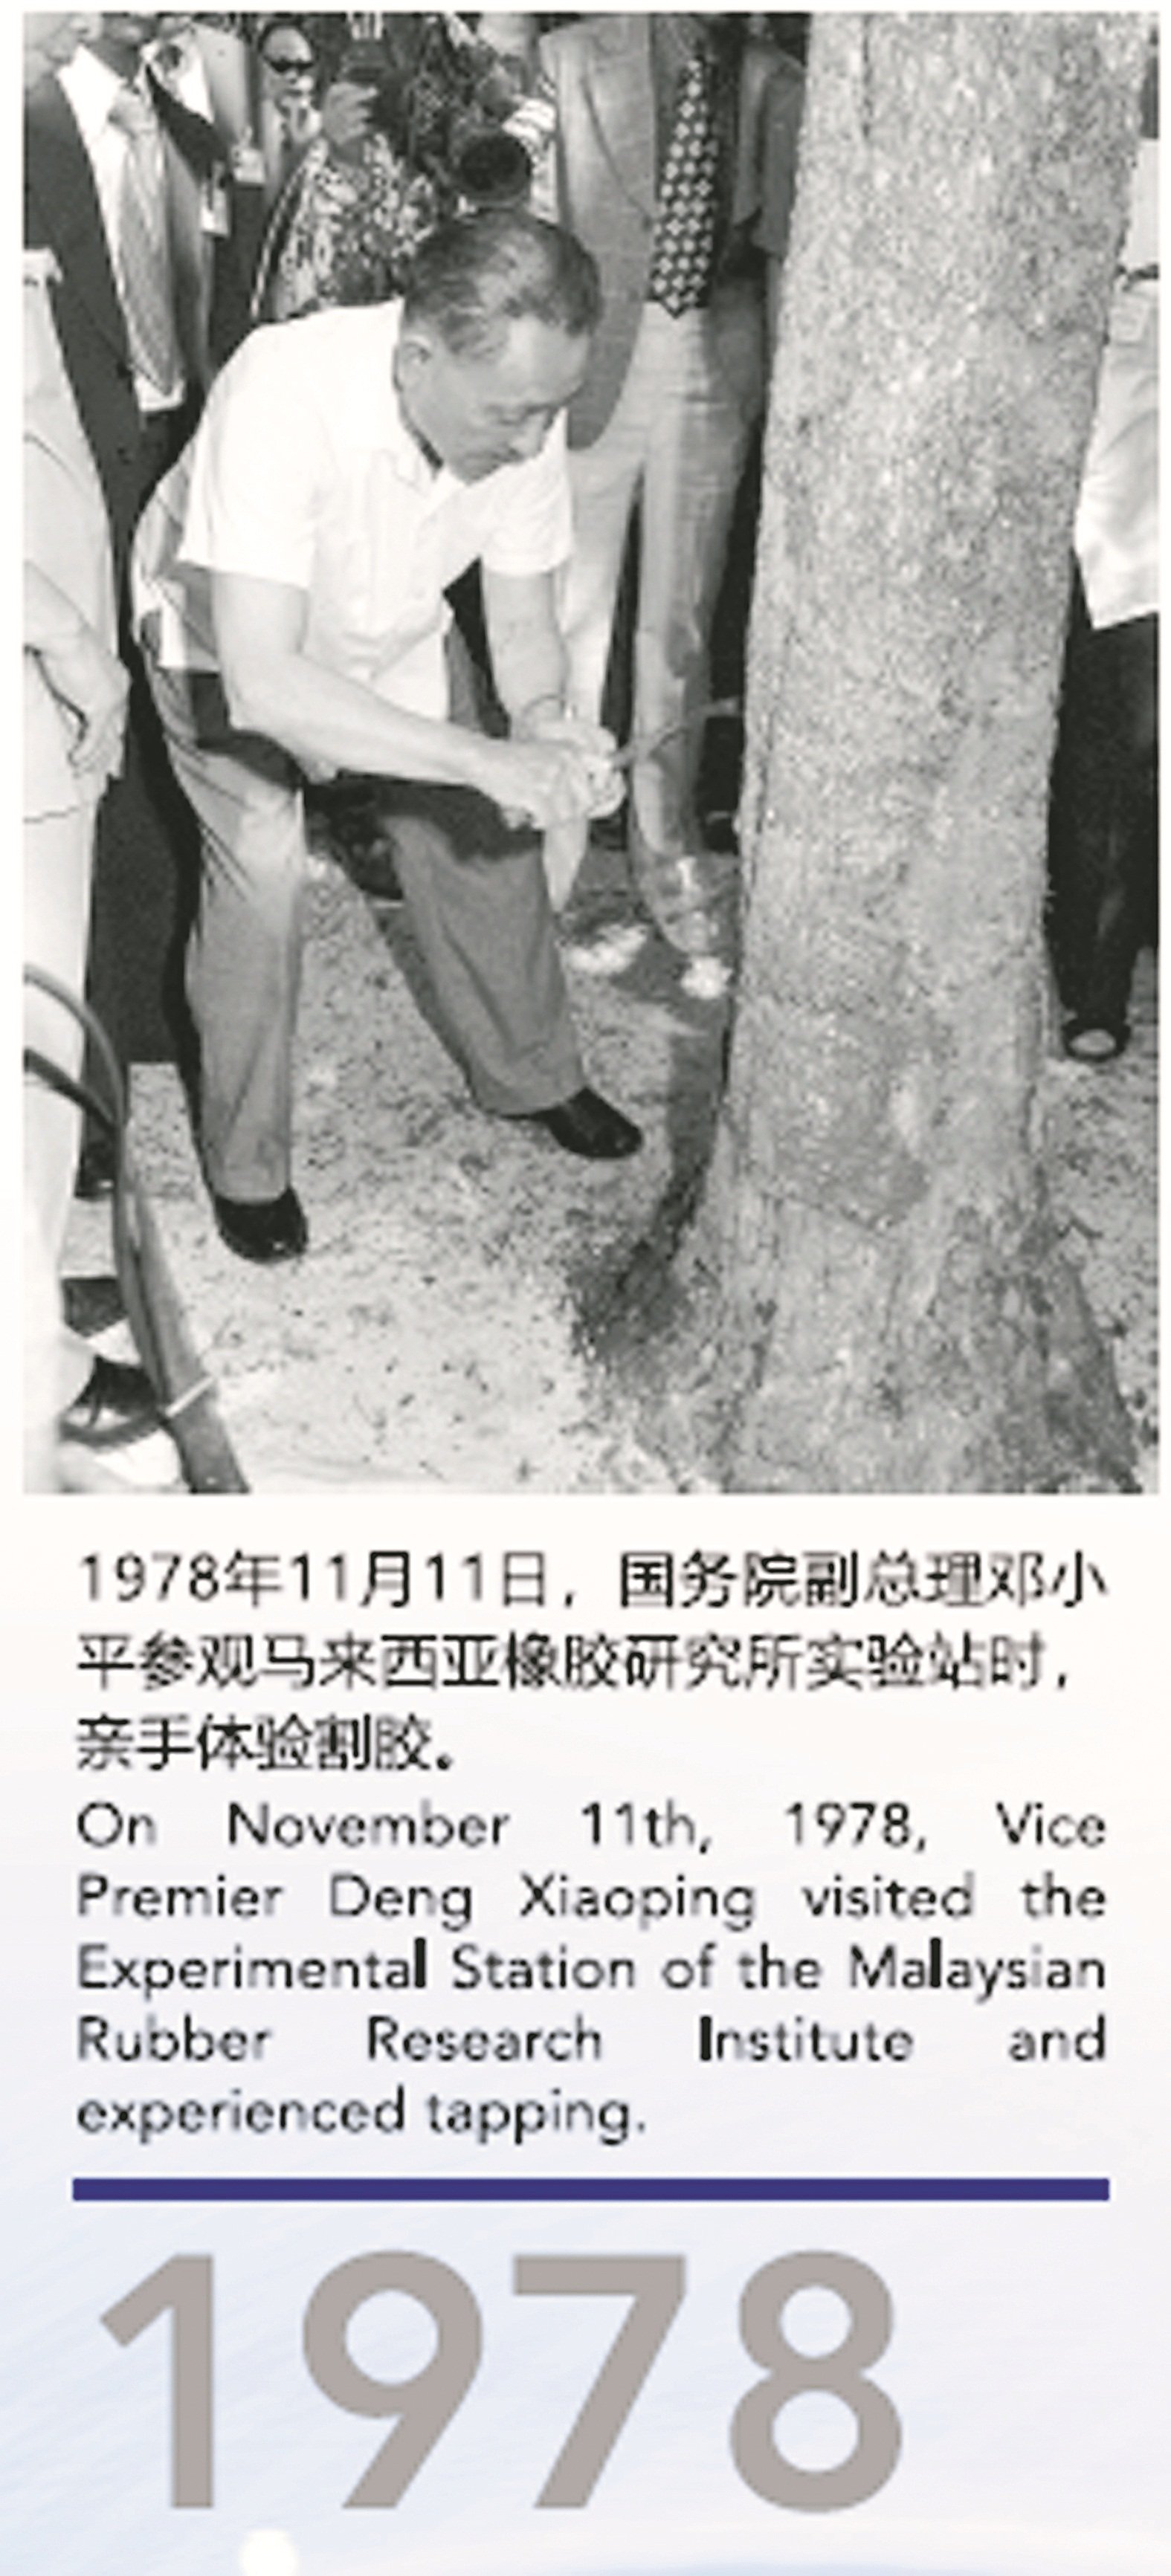 《共建美好未来》大型图片 展中，展出中国前国务院副 总经理邓小平在1978年来马 体验割胶的珍贵照片。